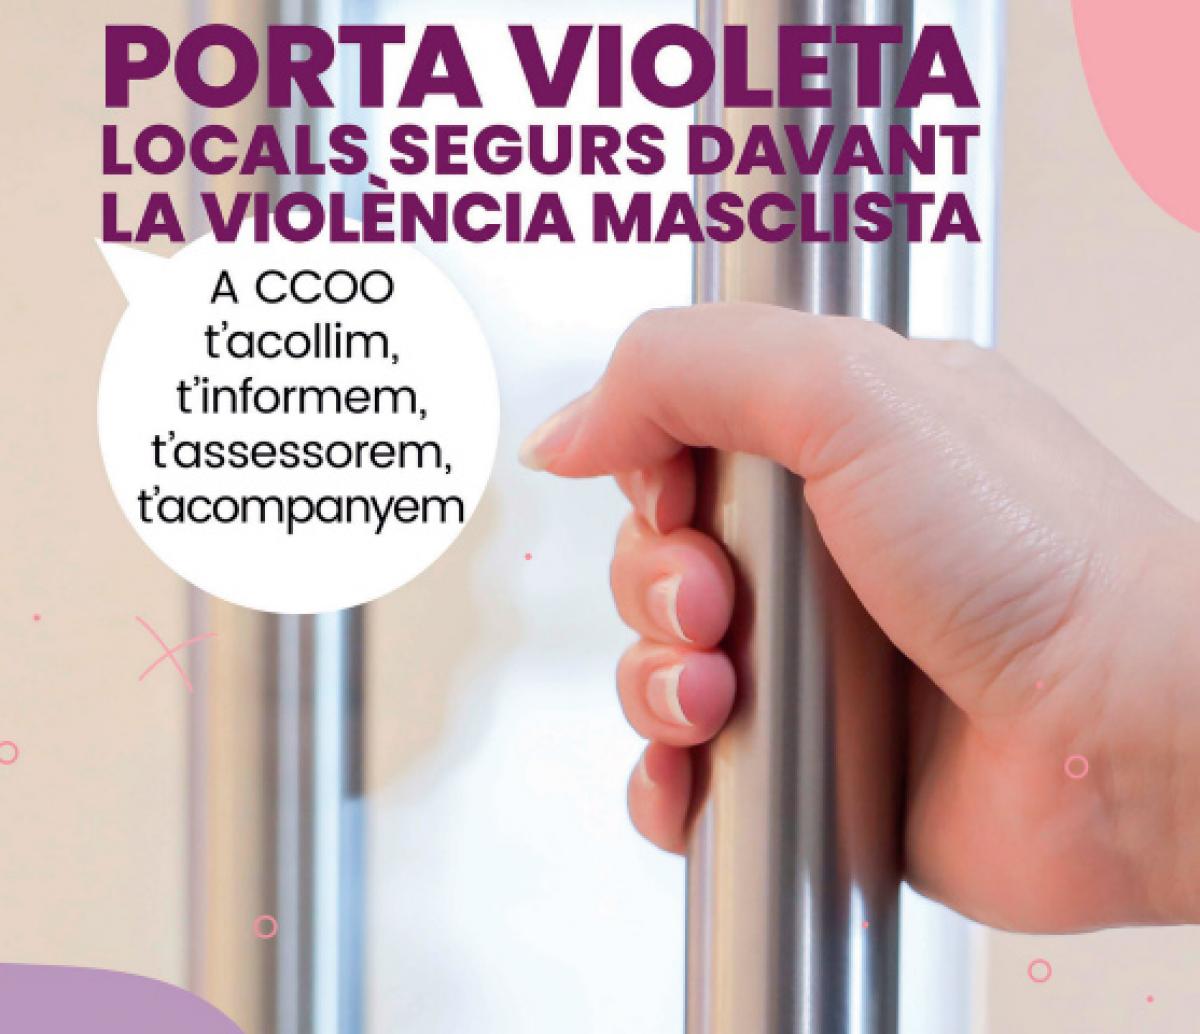 Campaña 'Porta Violeta, locals segurs davant la violència masclista'